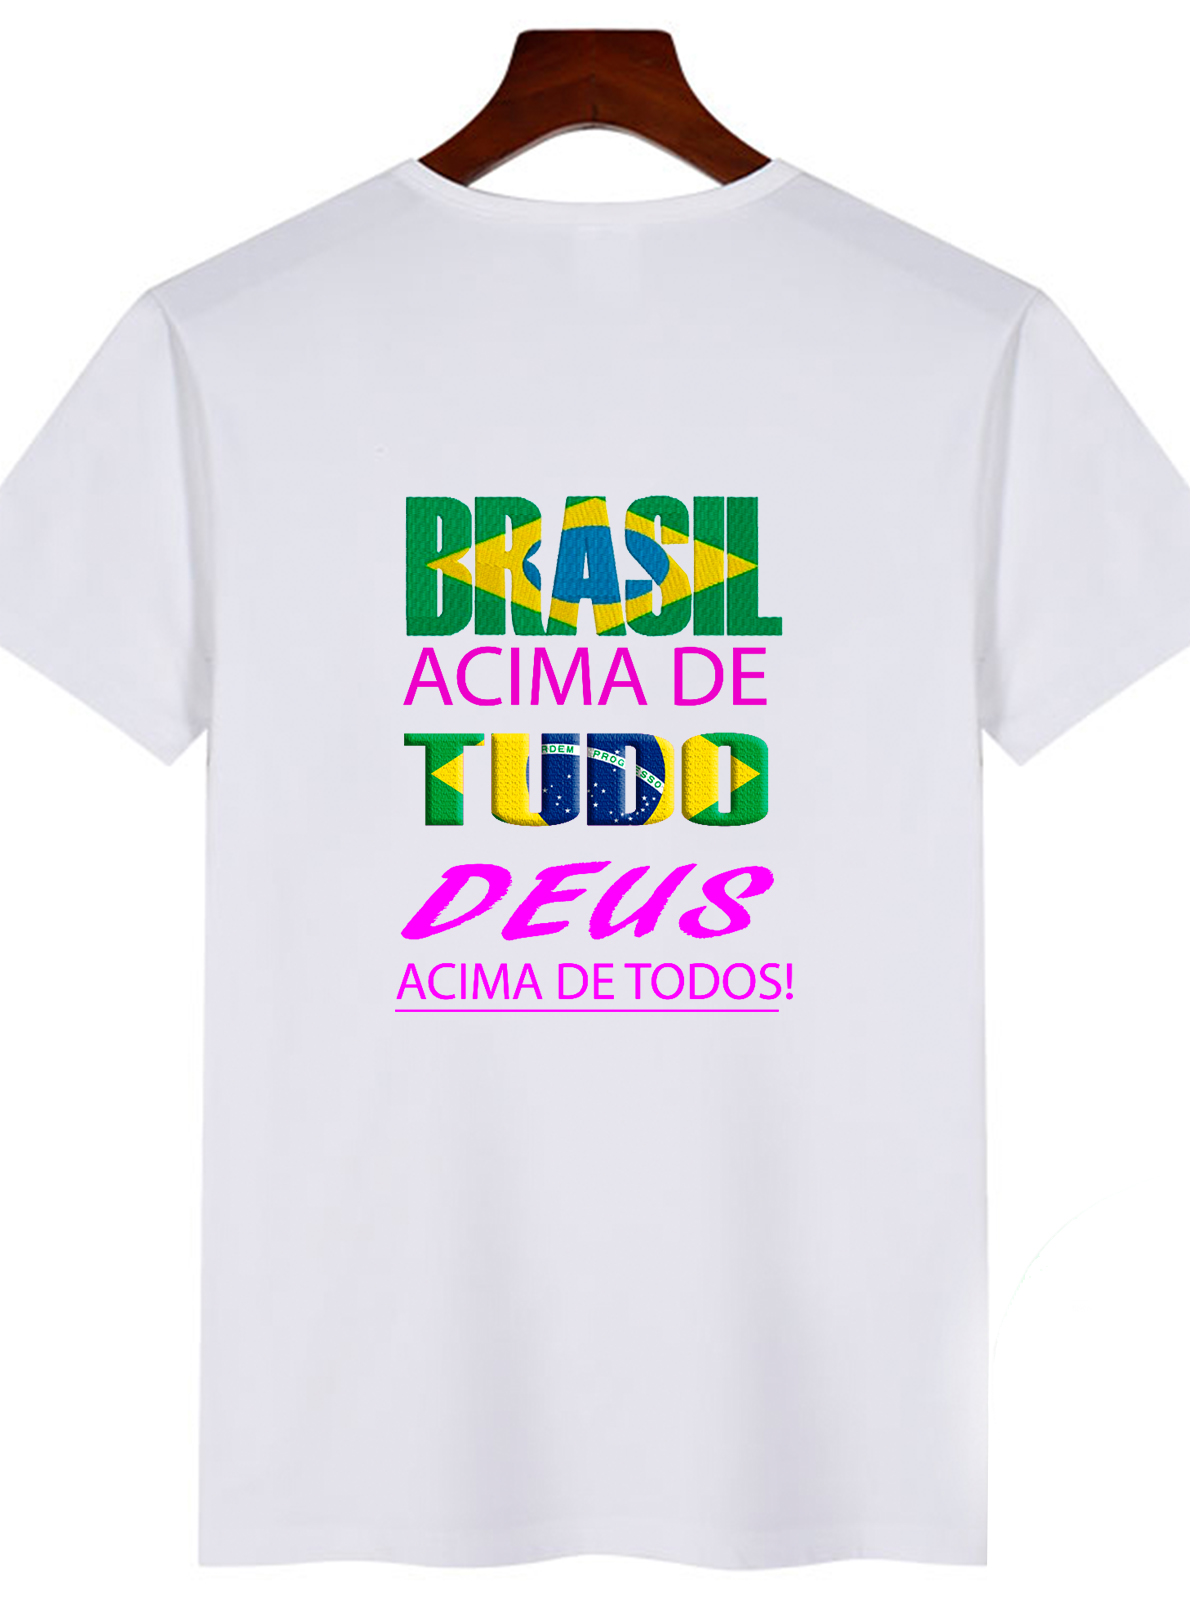 Everyone alcove Say Camiseta Brasil Acima de Tudo Deus Acima de Todos!Jvv Personalizados JVV  Personalizados em Barretos